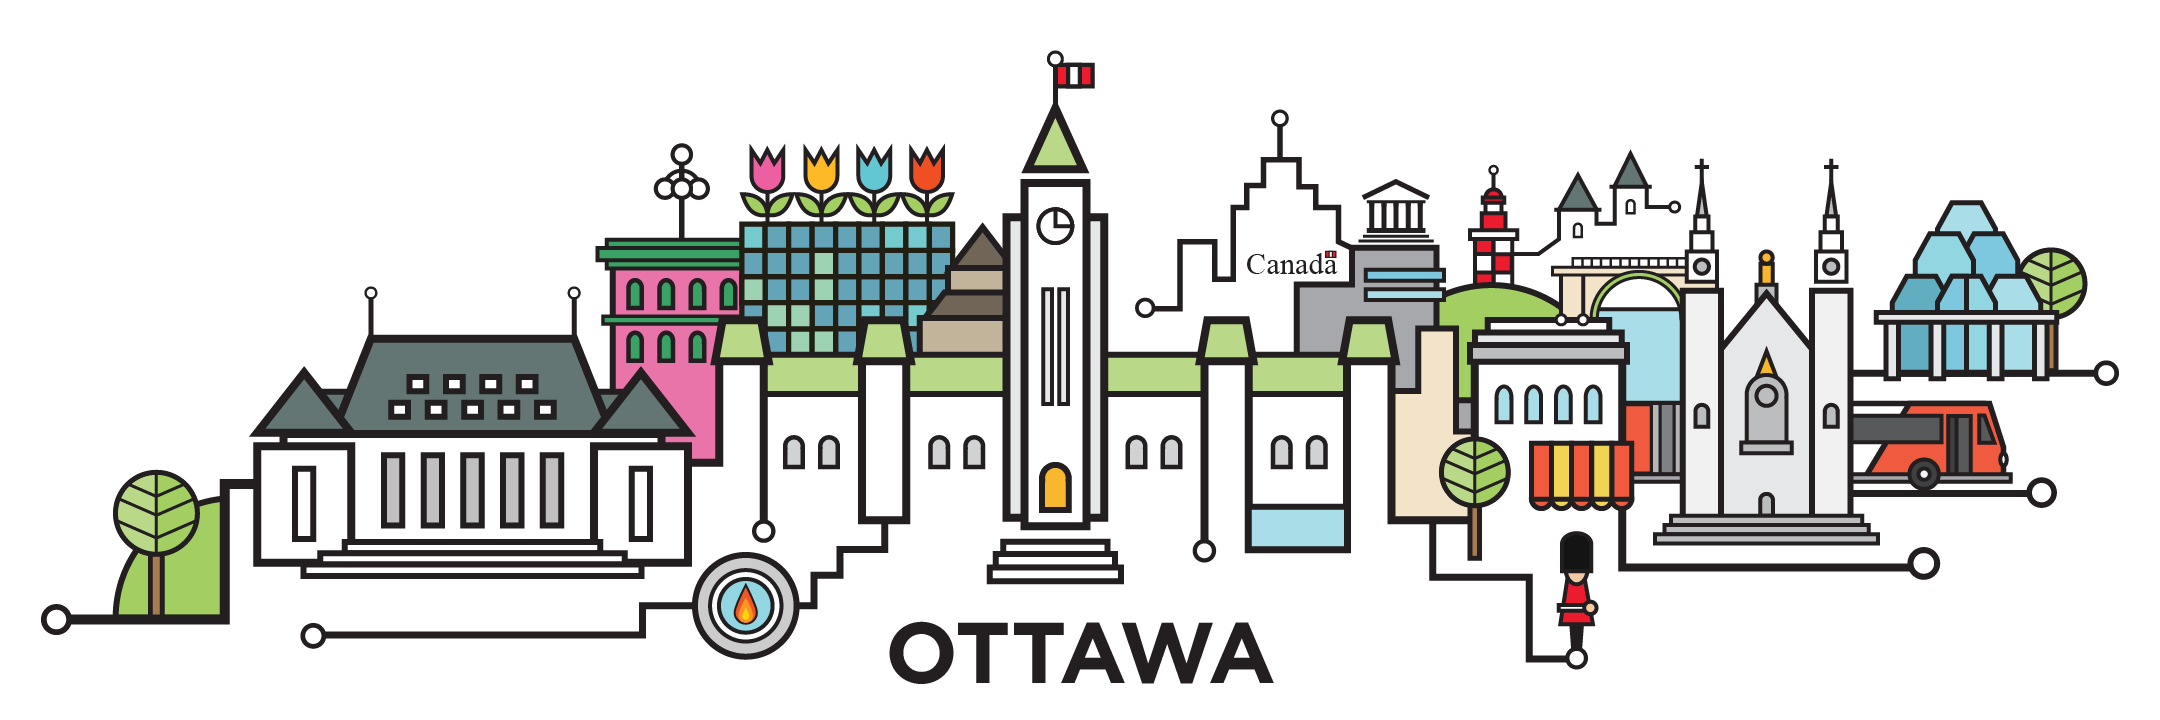 ottawa-cityline-illustration-by-loogart